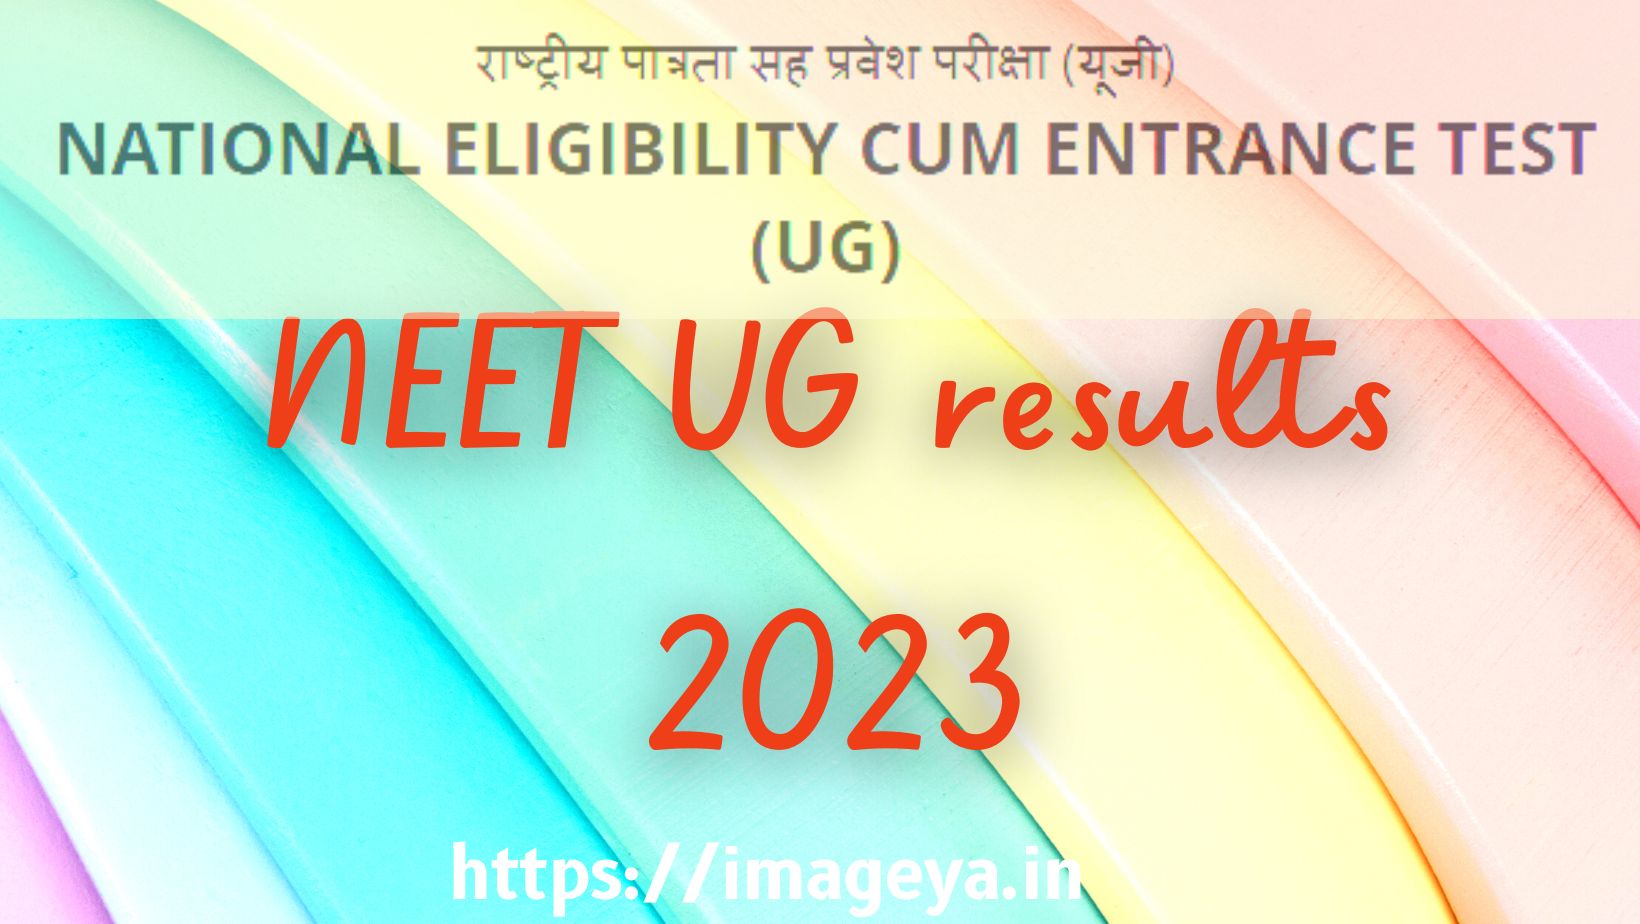 NEET UG results 2023